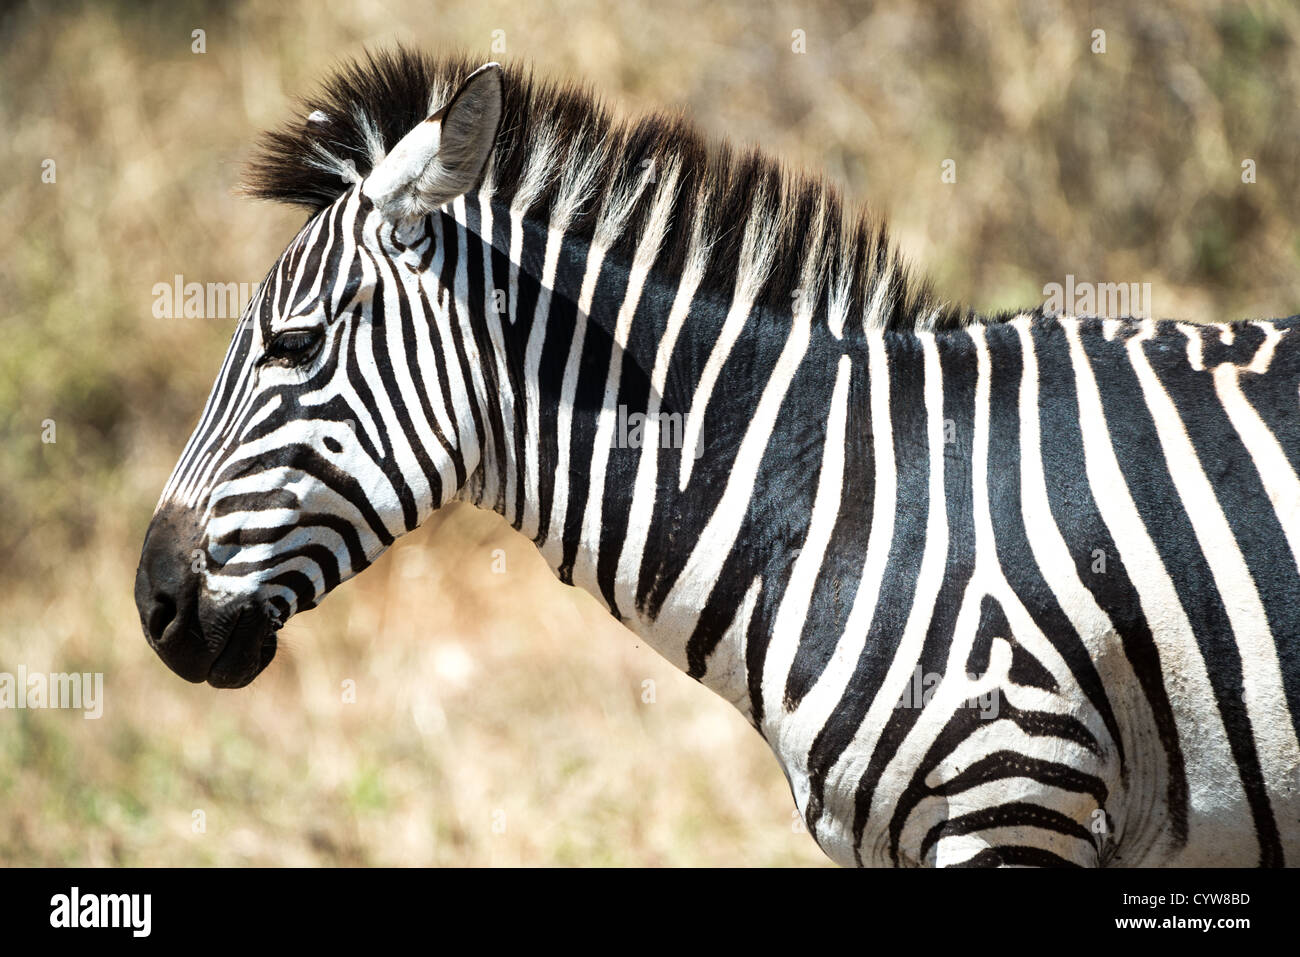 Der Tarangire National Park, Tansania - eine Seite Profil eines Zebras in der Tarangire National Park im Norden von Tansania, nicht weit von den Ngorongoro Krater und die Serengeti. Stockfoto